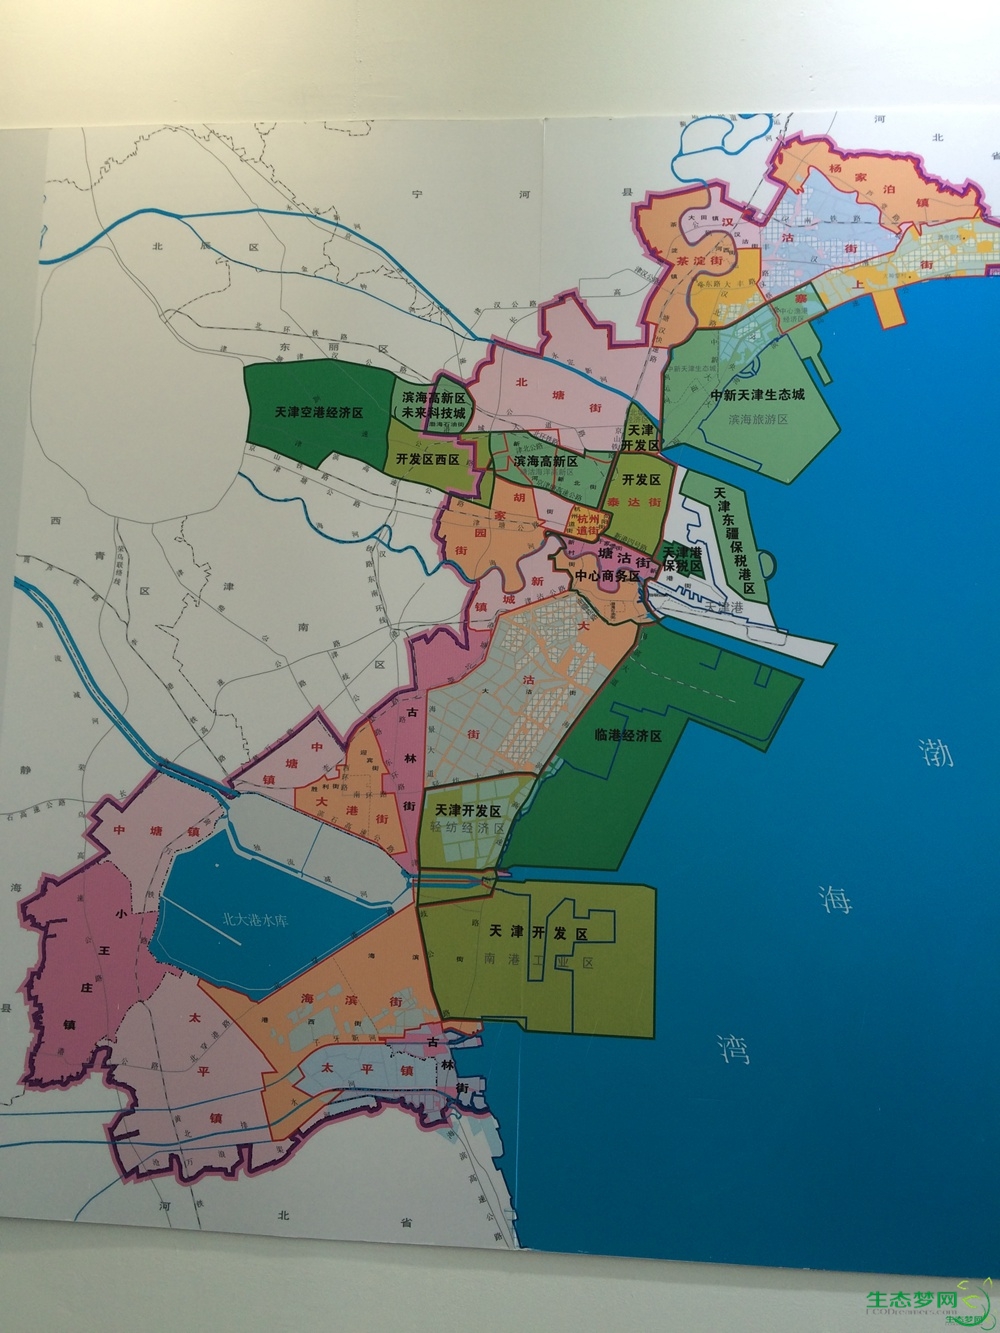 2015-4-27 15:41 正文摘要:  根据滨海新区最新的功能区及街道划分